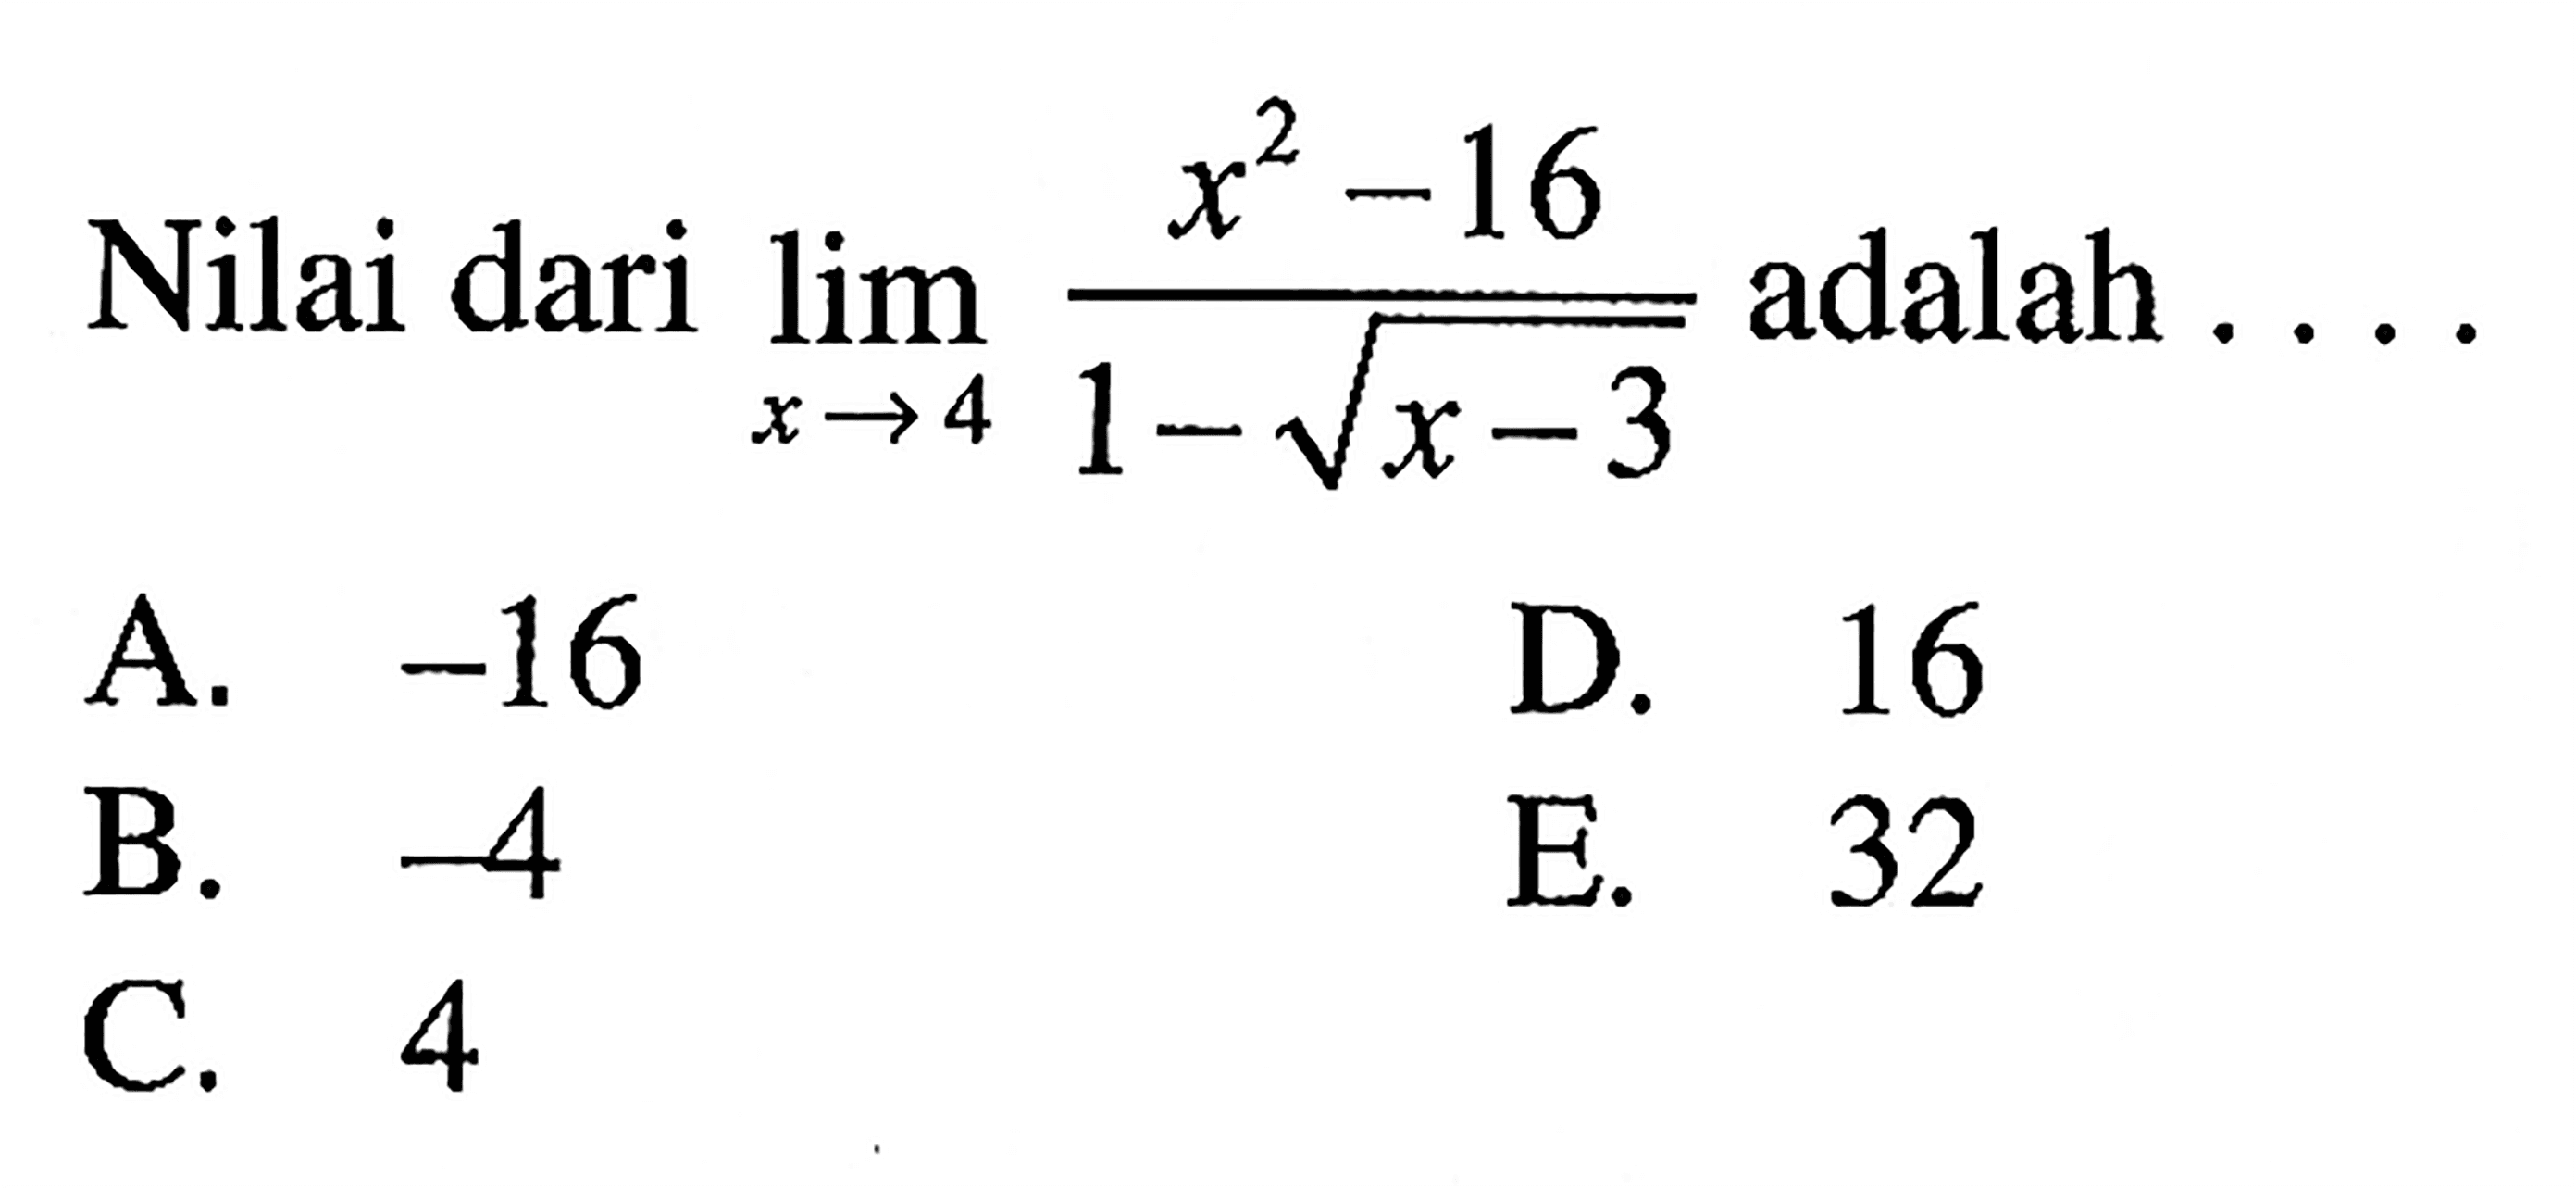 Nilai dari lim x->4 (x^2-16)/(1-akar(x-3)) adalah ...